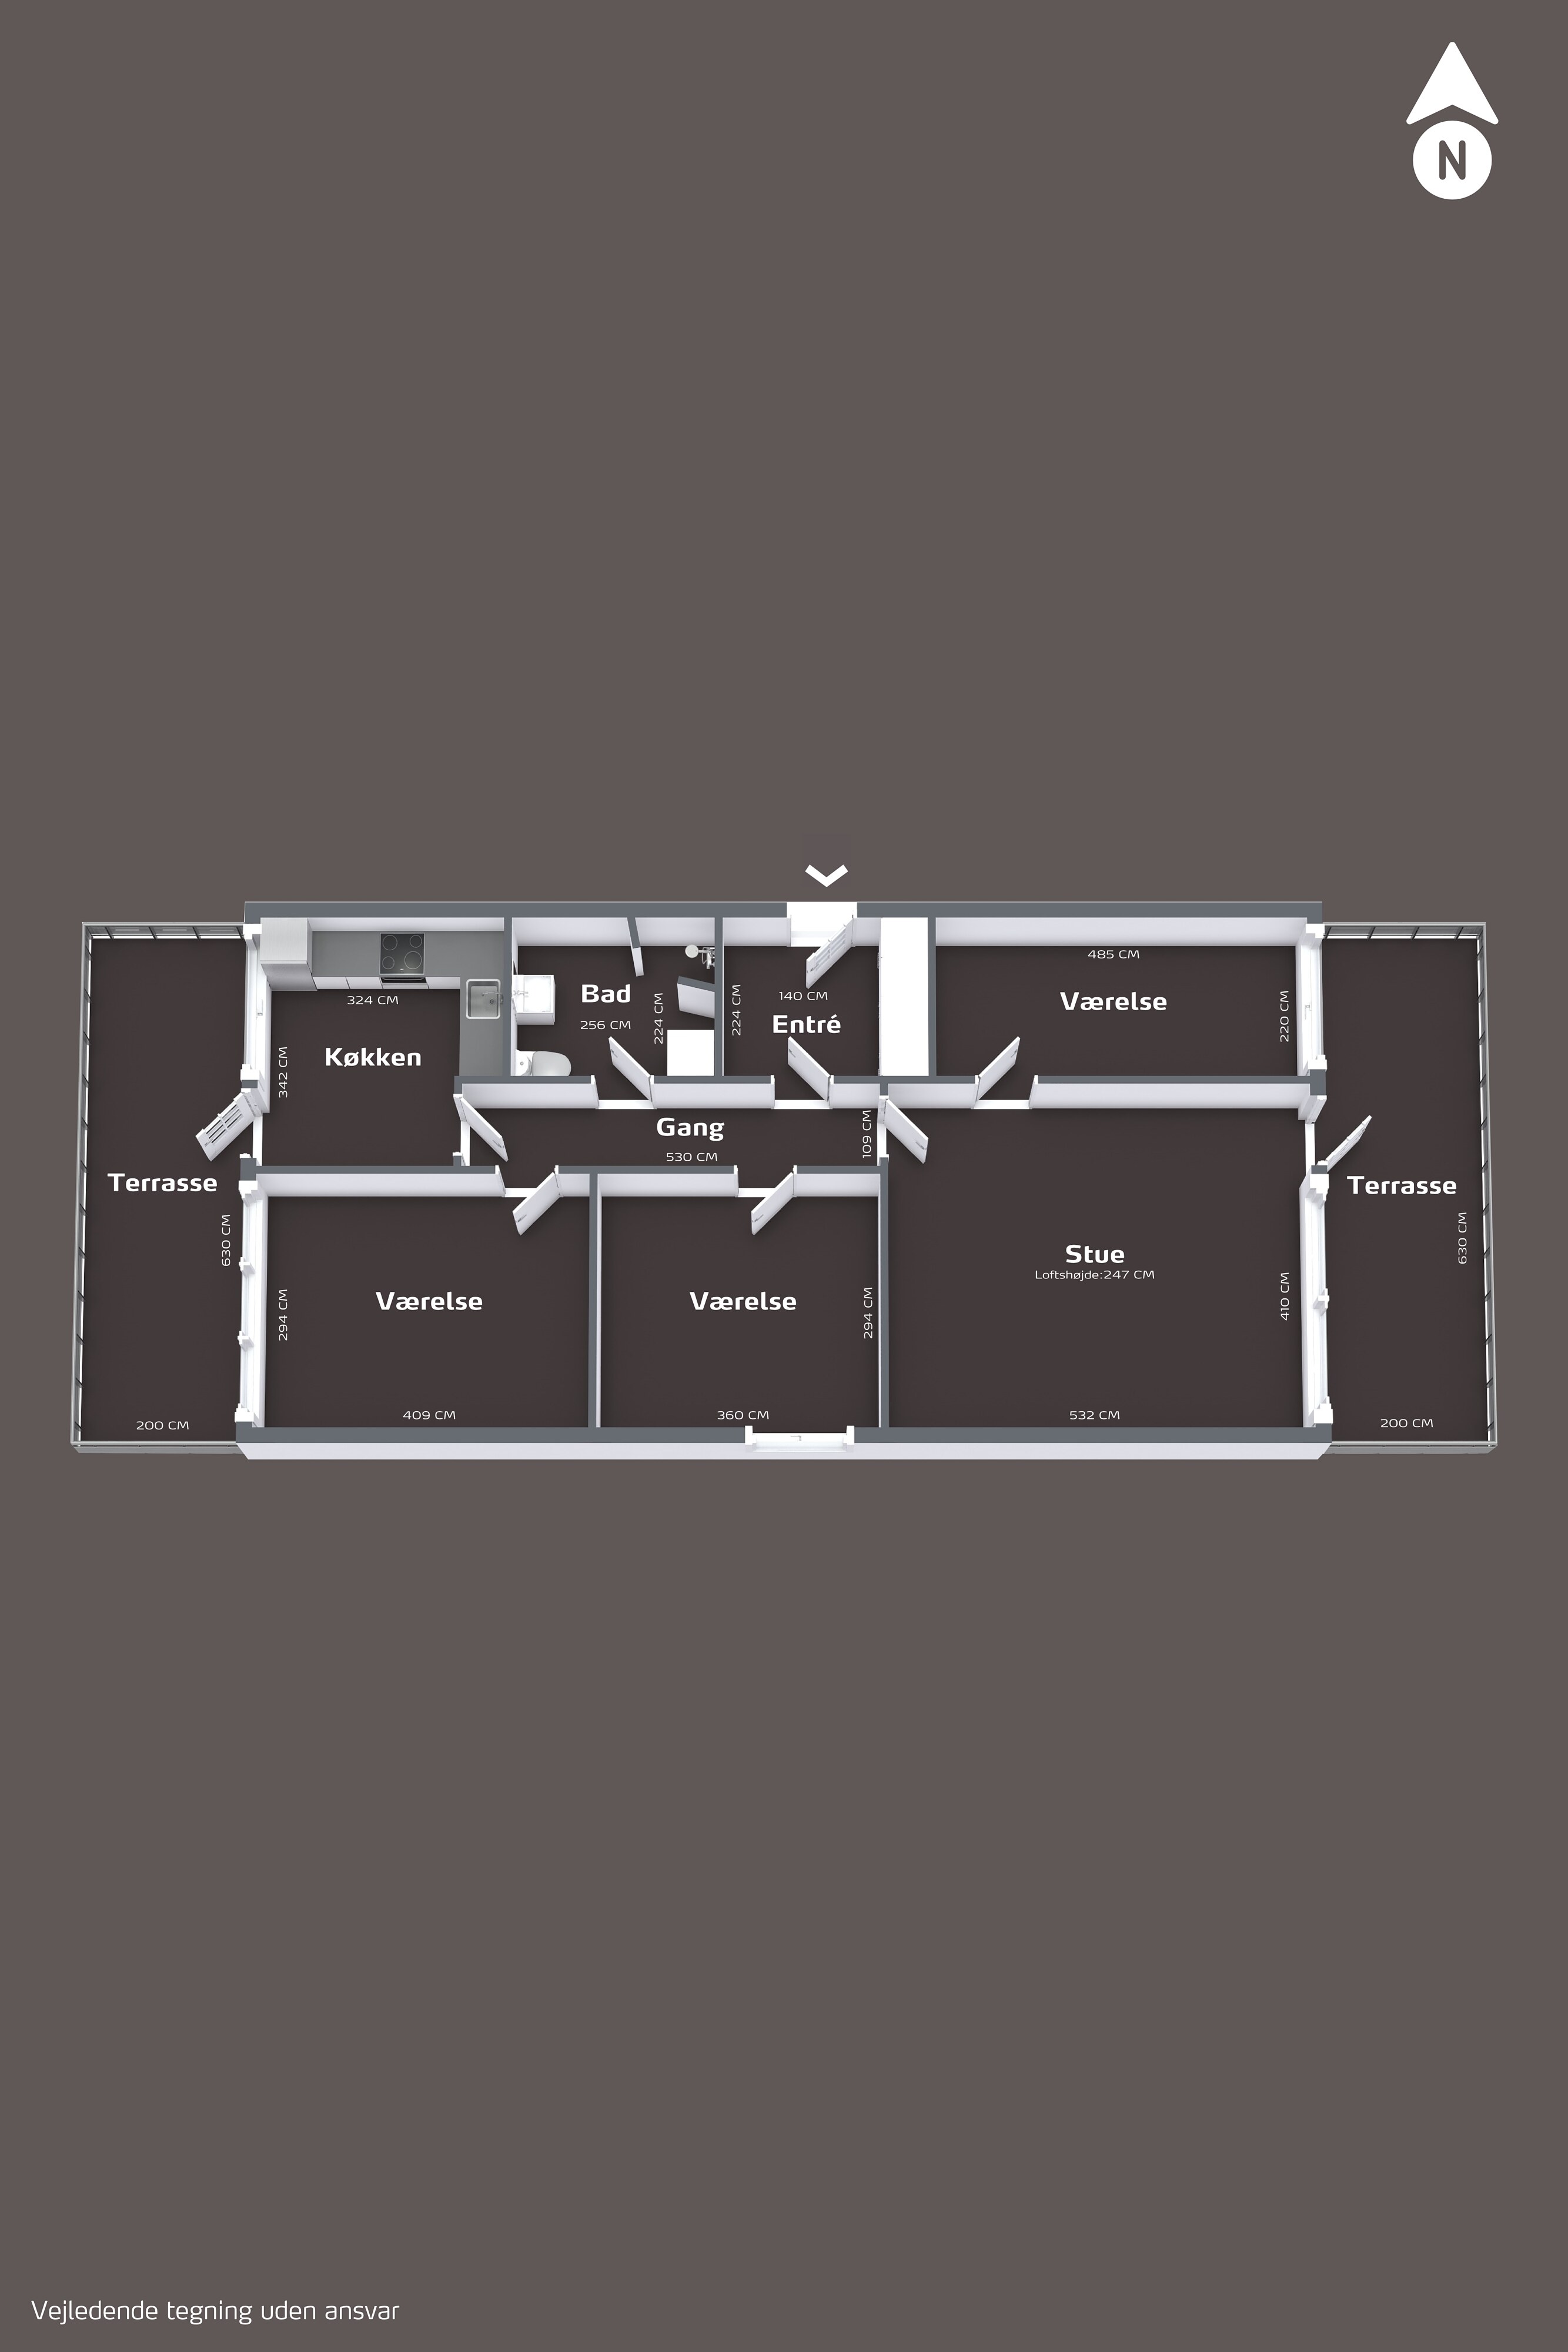 Plantegning af boligens alle plan 3d (2x3)